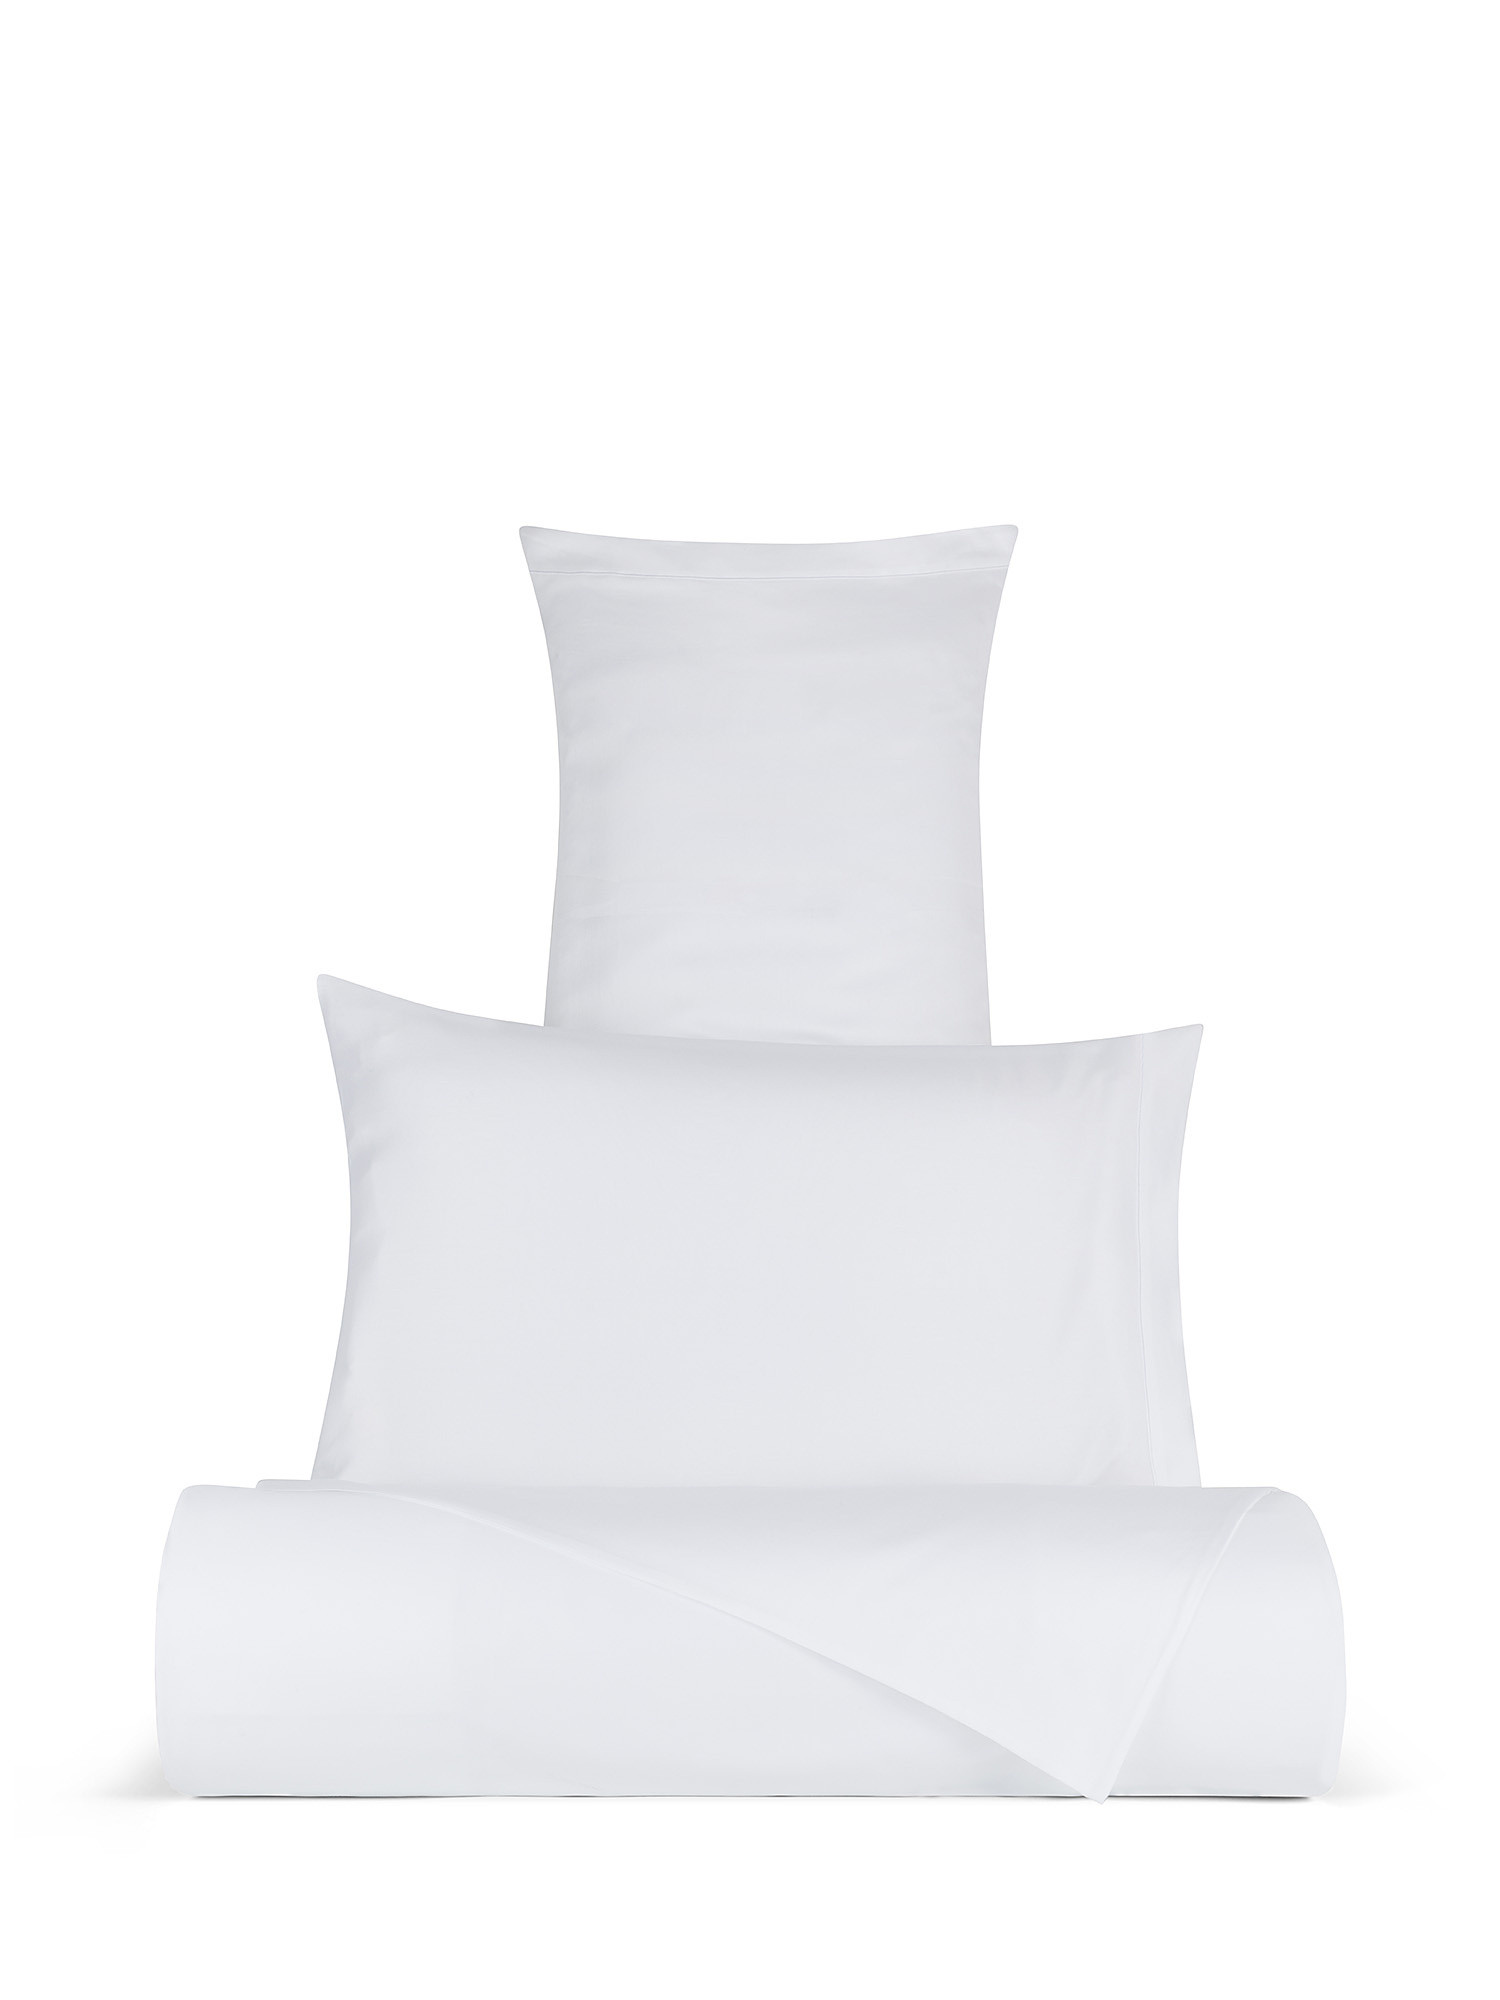 Egyptian cotton satin pillowcase Portofino, White, large image number 2